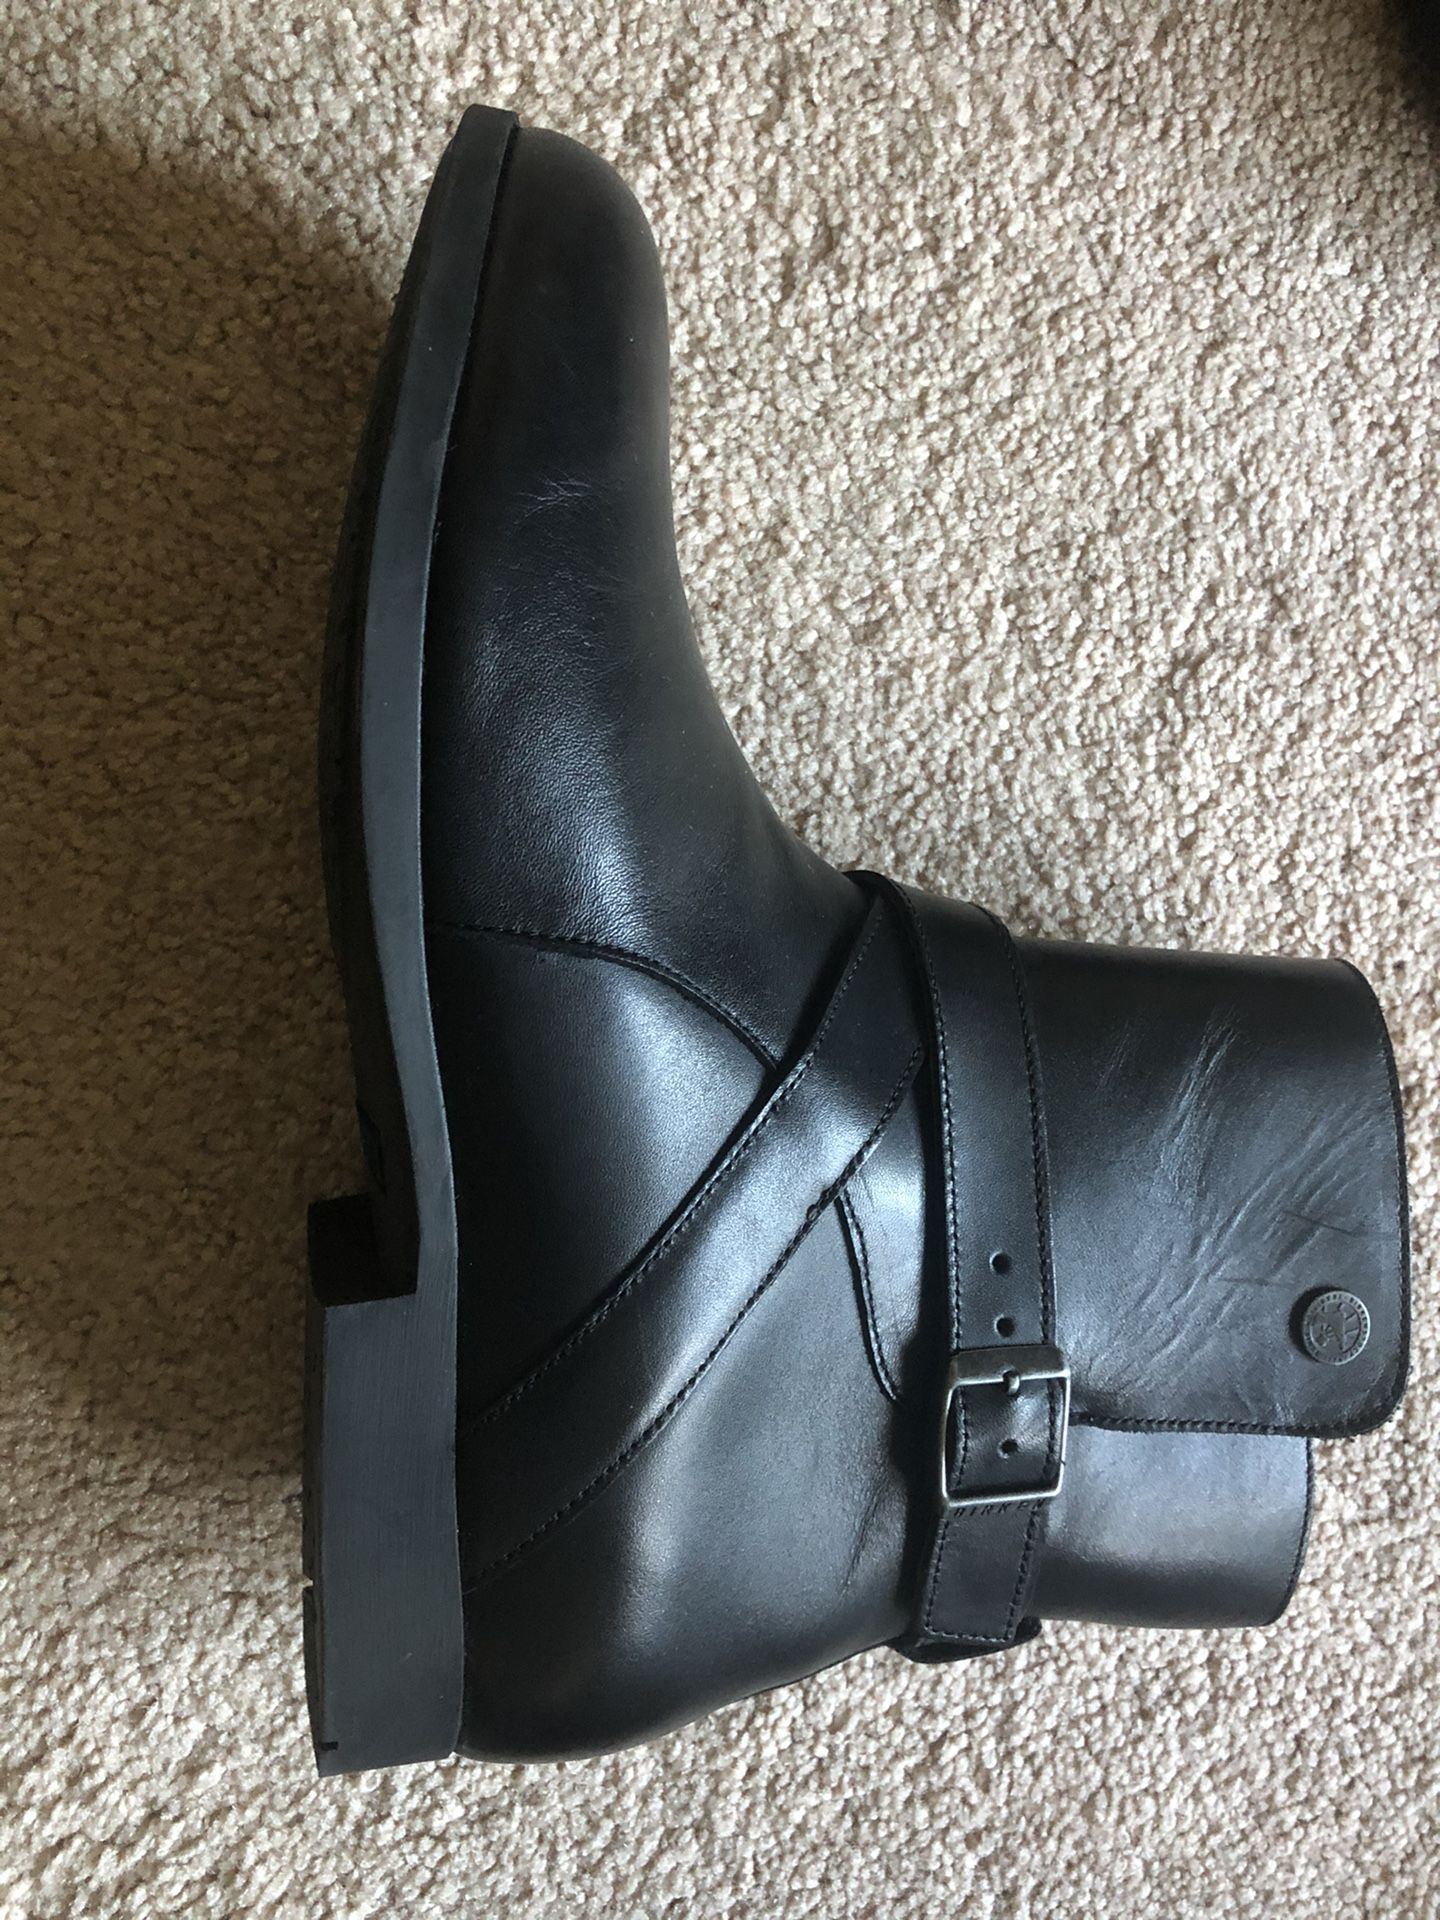 Birkenstock boot size 9 1/2